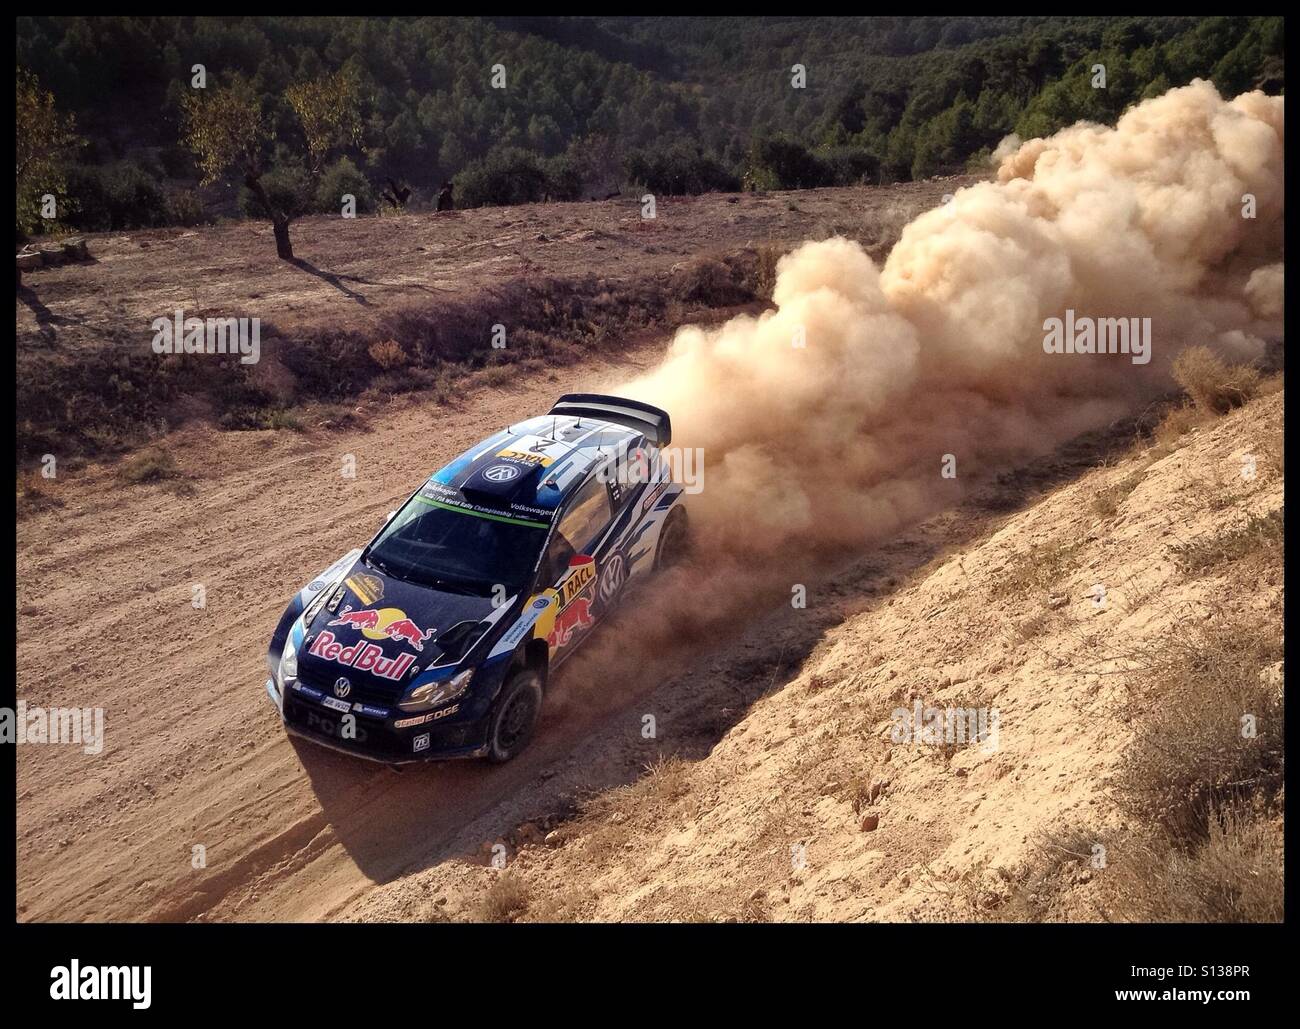 2015 WRC Rally RACC-Rally de España SS9 Terra Alta 2 [La Fatarella] Jari-Matti Latvala/Miikka Anttila - Volkswagen Polo R WRC rally car, Catalonia, Spain. Stock Photo